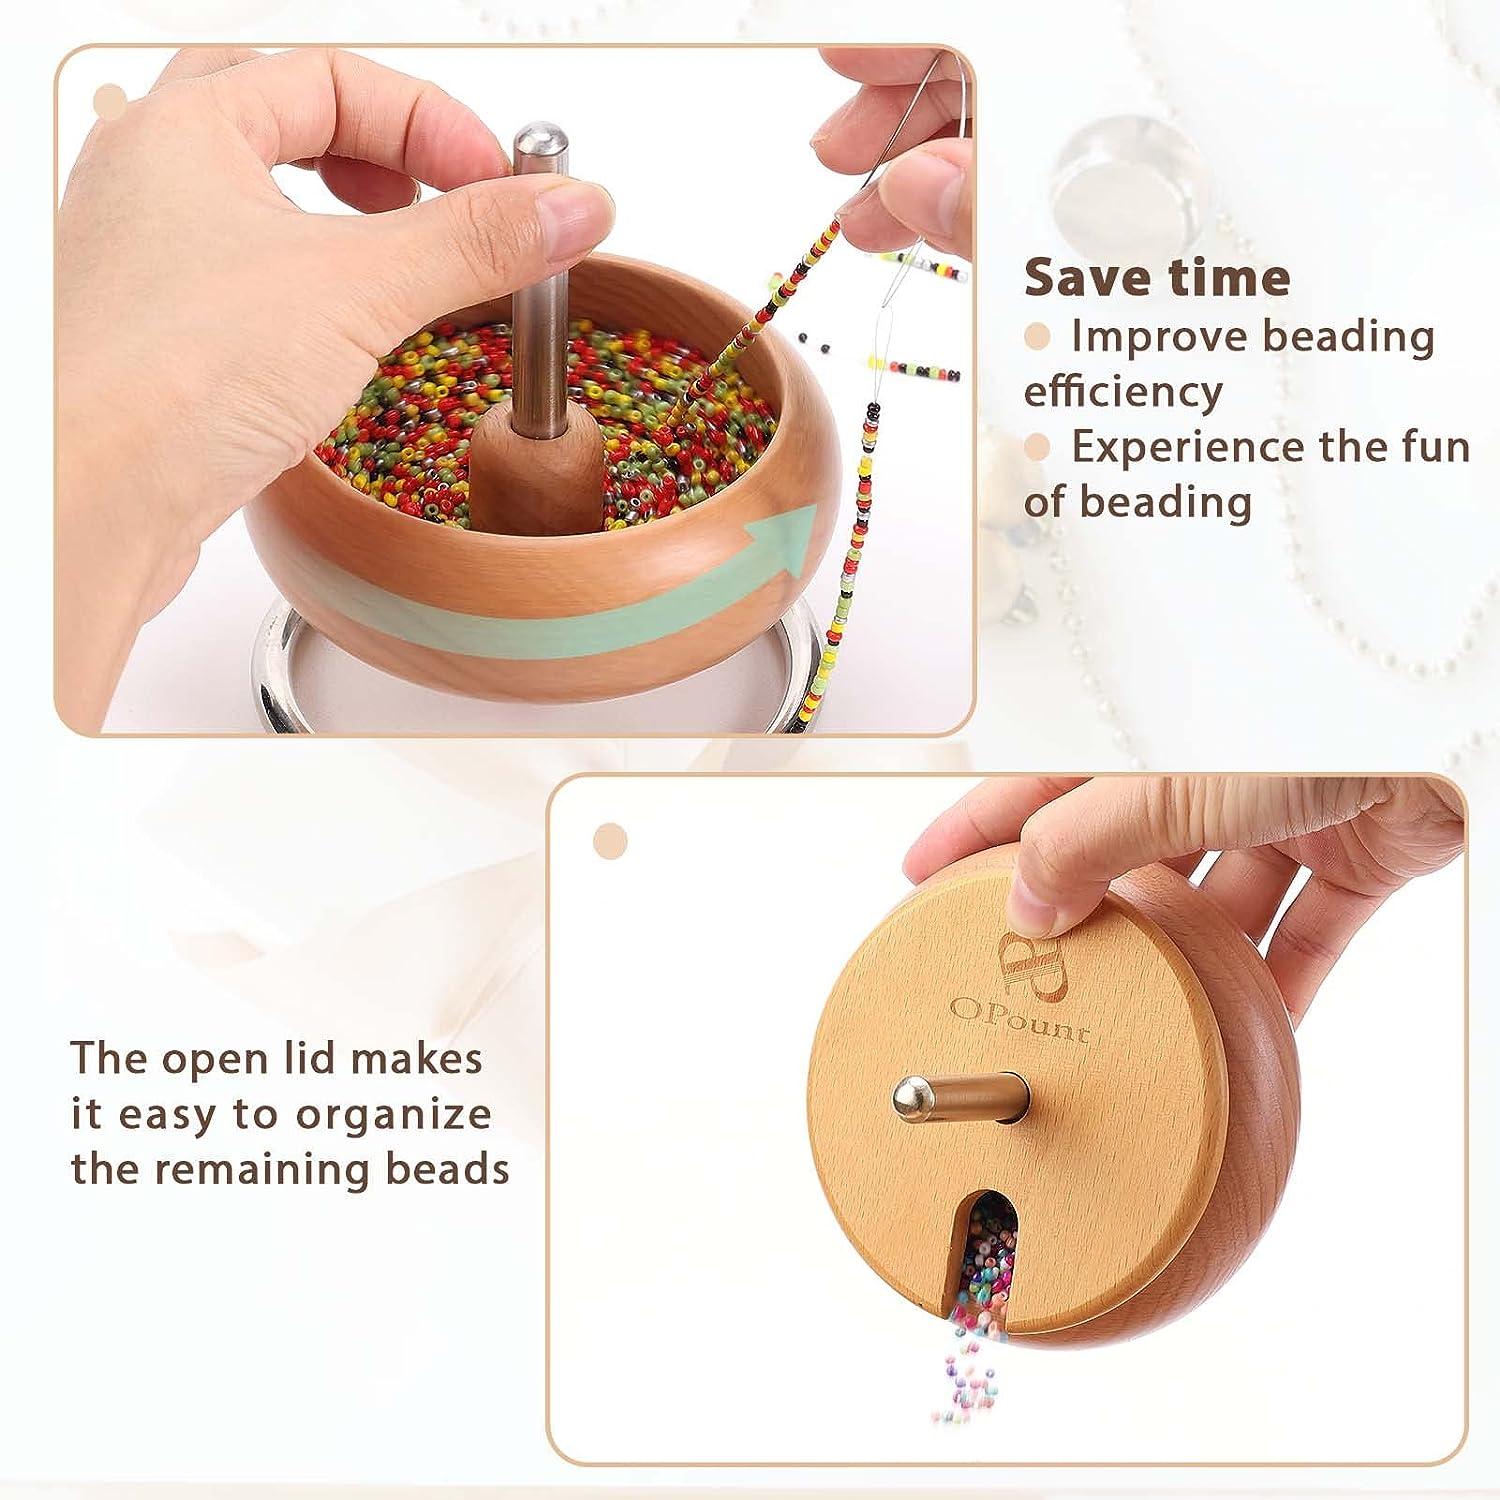 Beading Bowl Spinner Kit,diy Waist Bead Maker Electric Bead Spinner For Ma Waist  Beads